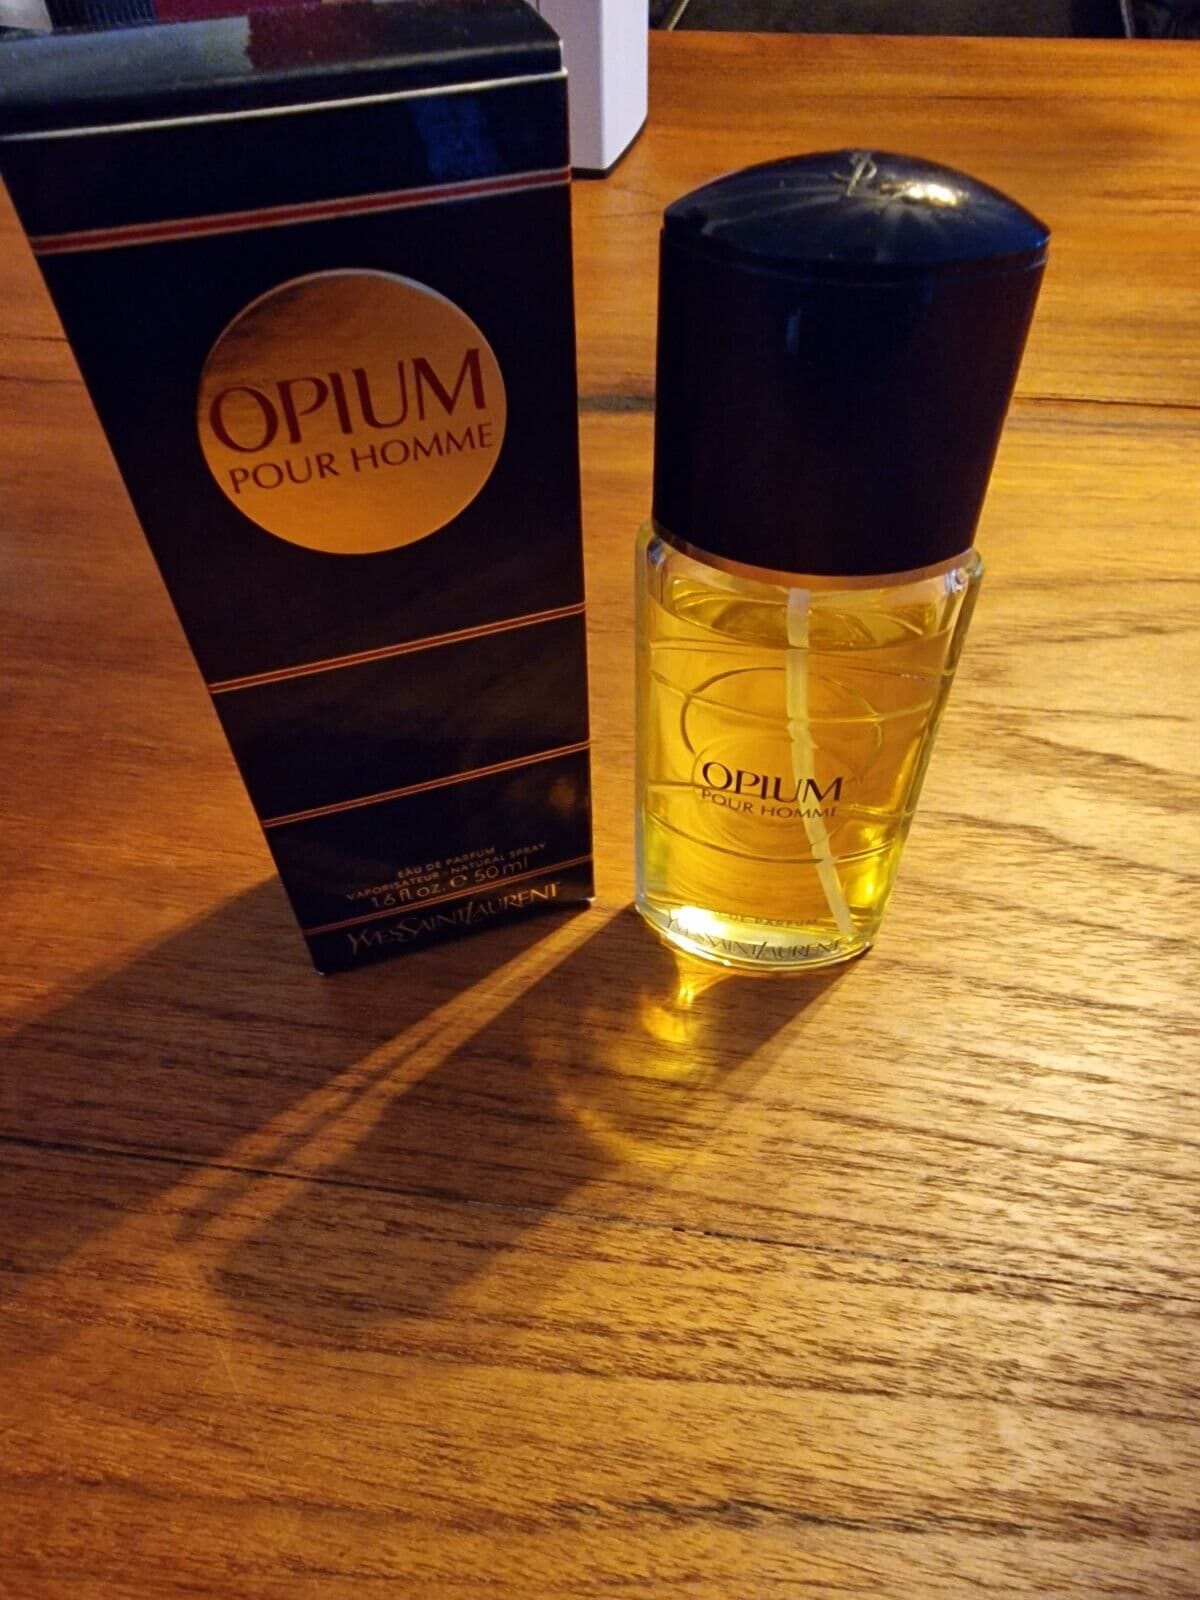 Ysl Opium Für Homme Eau De Parfum - 50 Ml Rarität, Vintage Sehr Schwer Zu Finden Vapo Fast Voll von miniperfumes